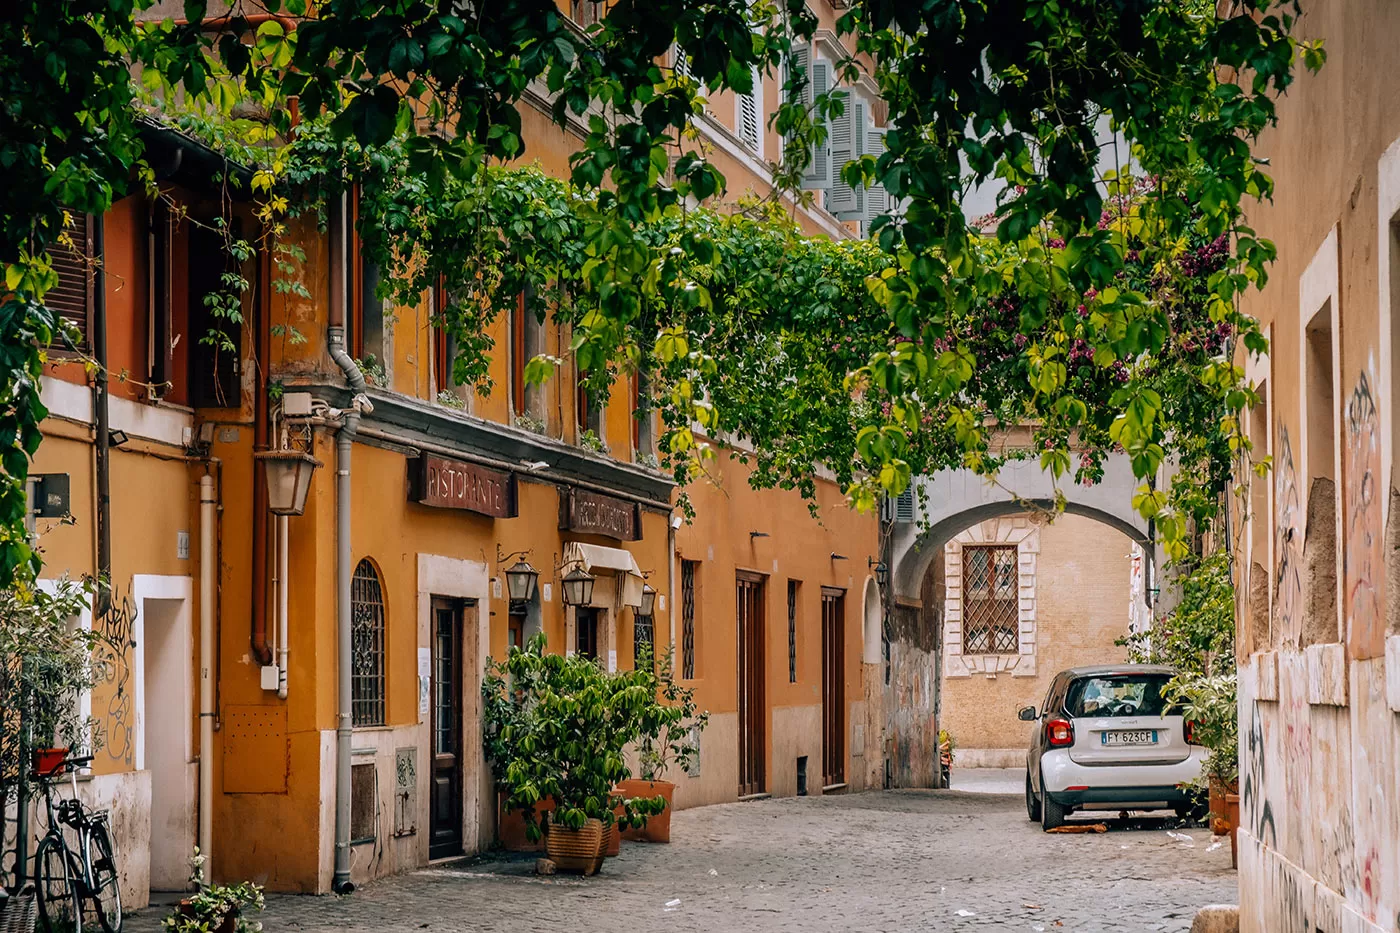 BEST Hotels in Trastevere Rome - Via dell'Arco di San Calisto - Vines